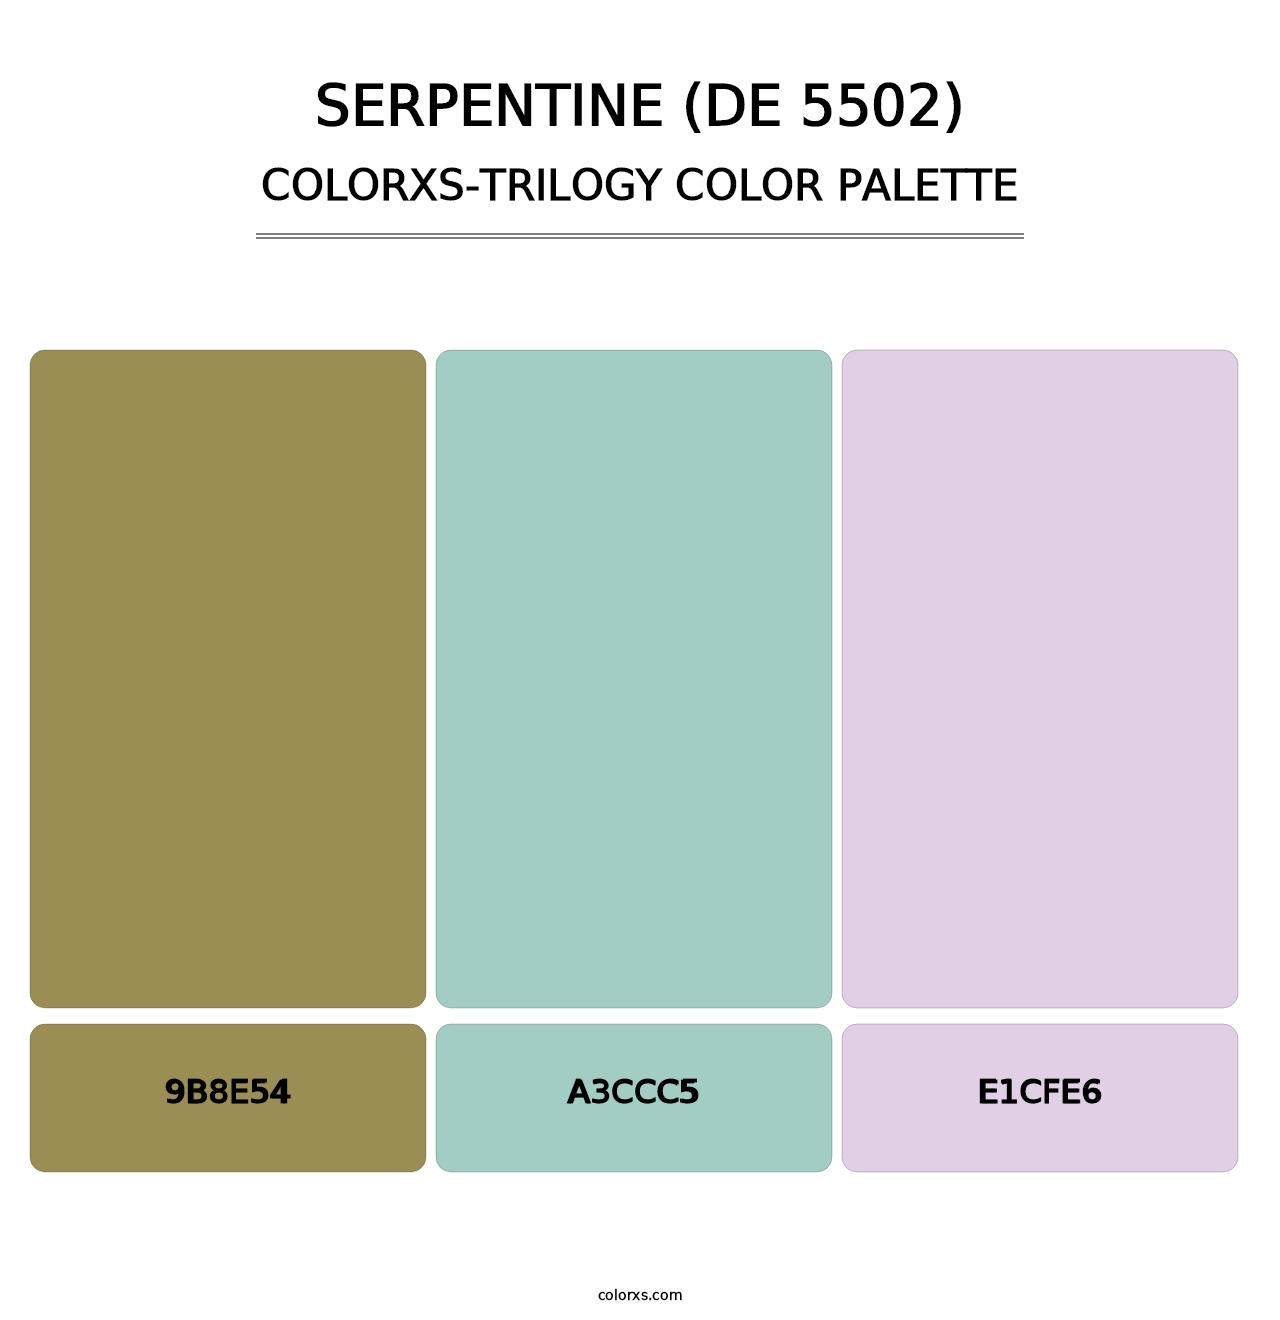 Serpentine (DE 5502) - Colorxs Trilogy Palette